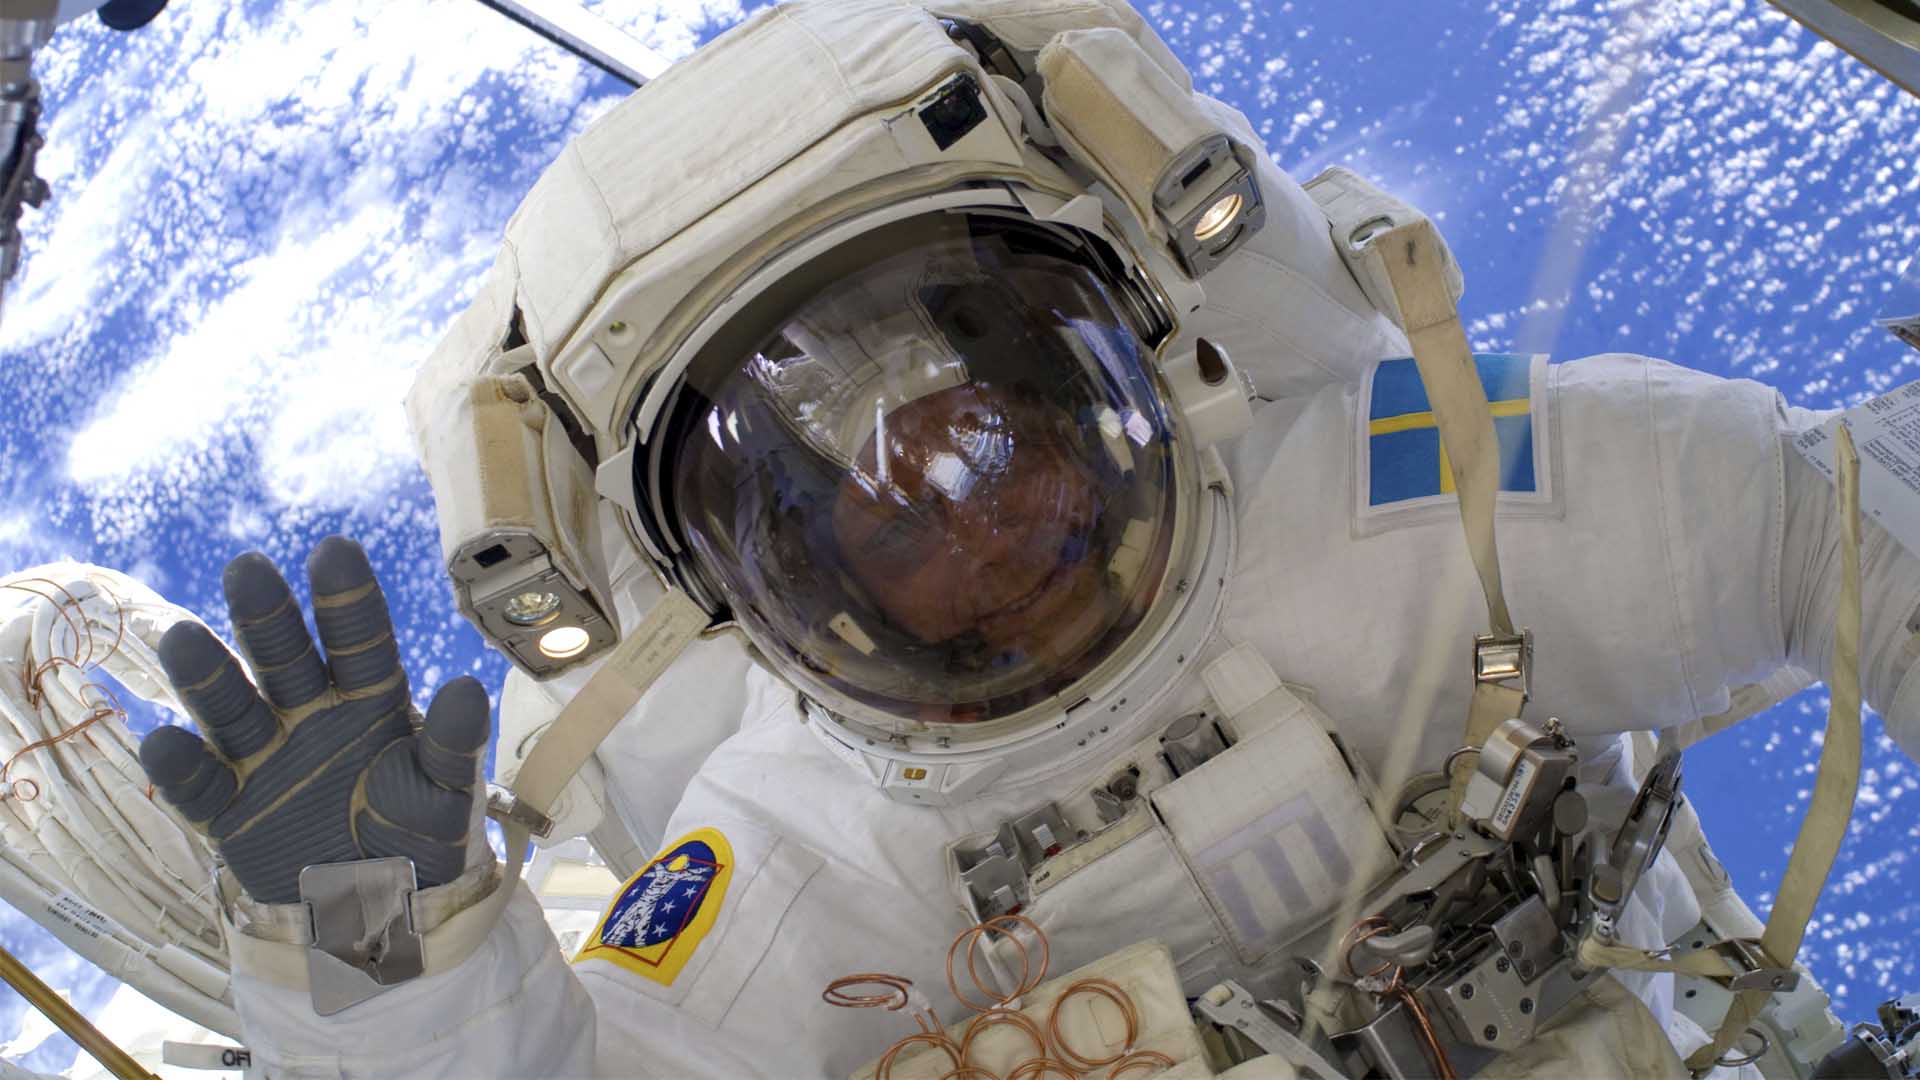 Entrenar como un astronauta y lanzar un satélite: así son los planes de la ESA para jóvenes